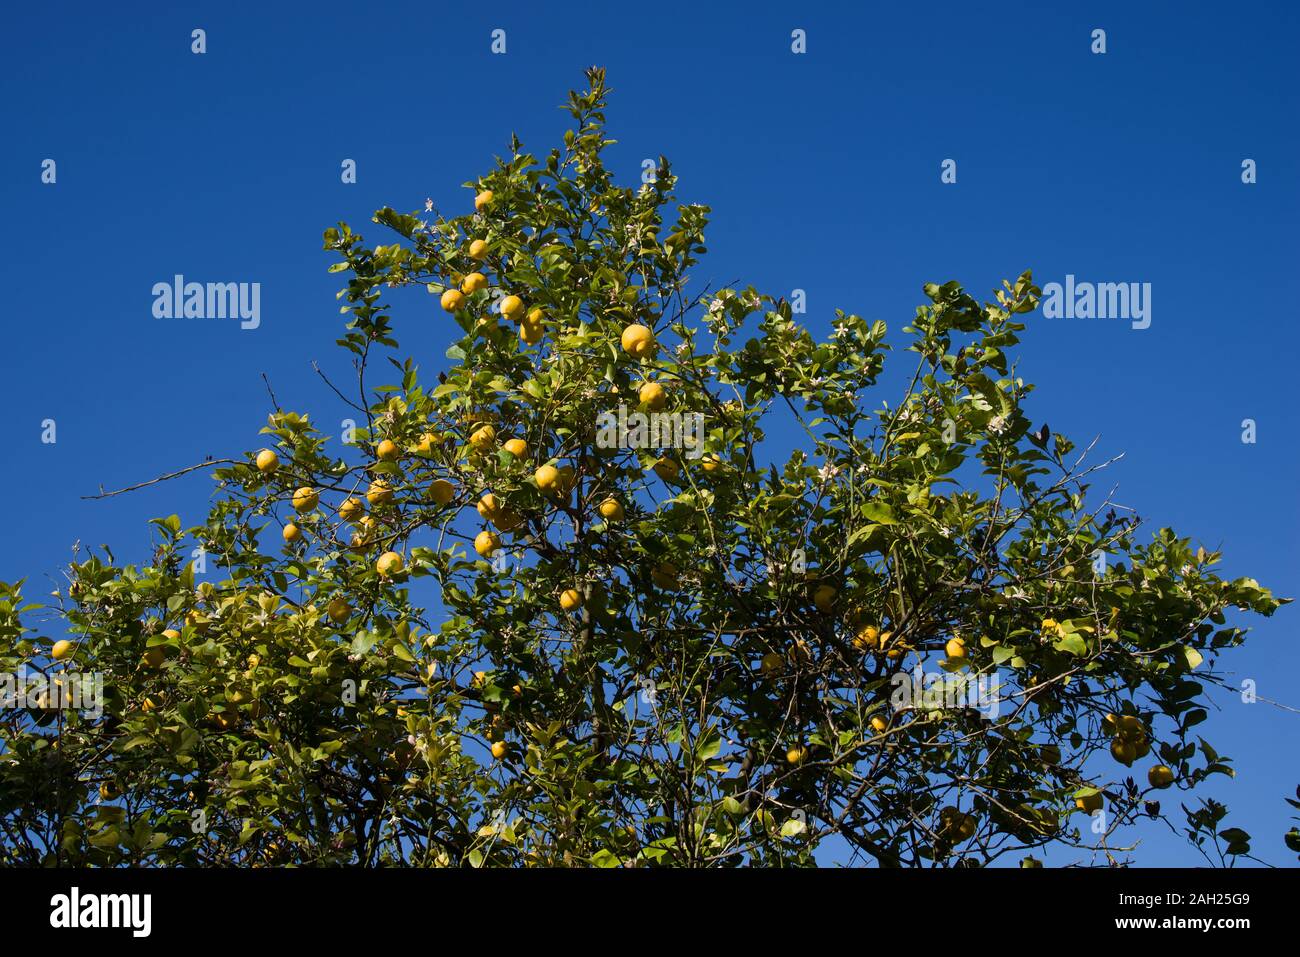 Italy  Sicily  Syracuse , 05 May 2019:  Sicilian cedars on the tree - Mediterranean citrus fruits similar to lemon Stock Photo